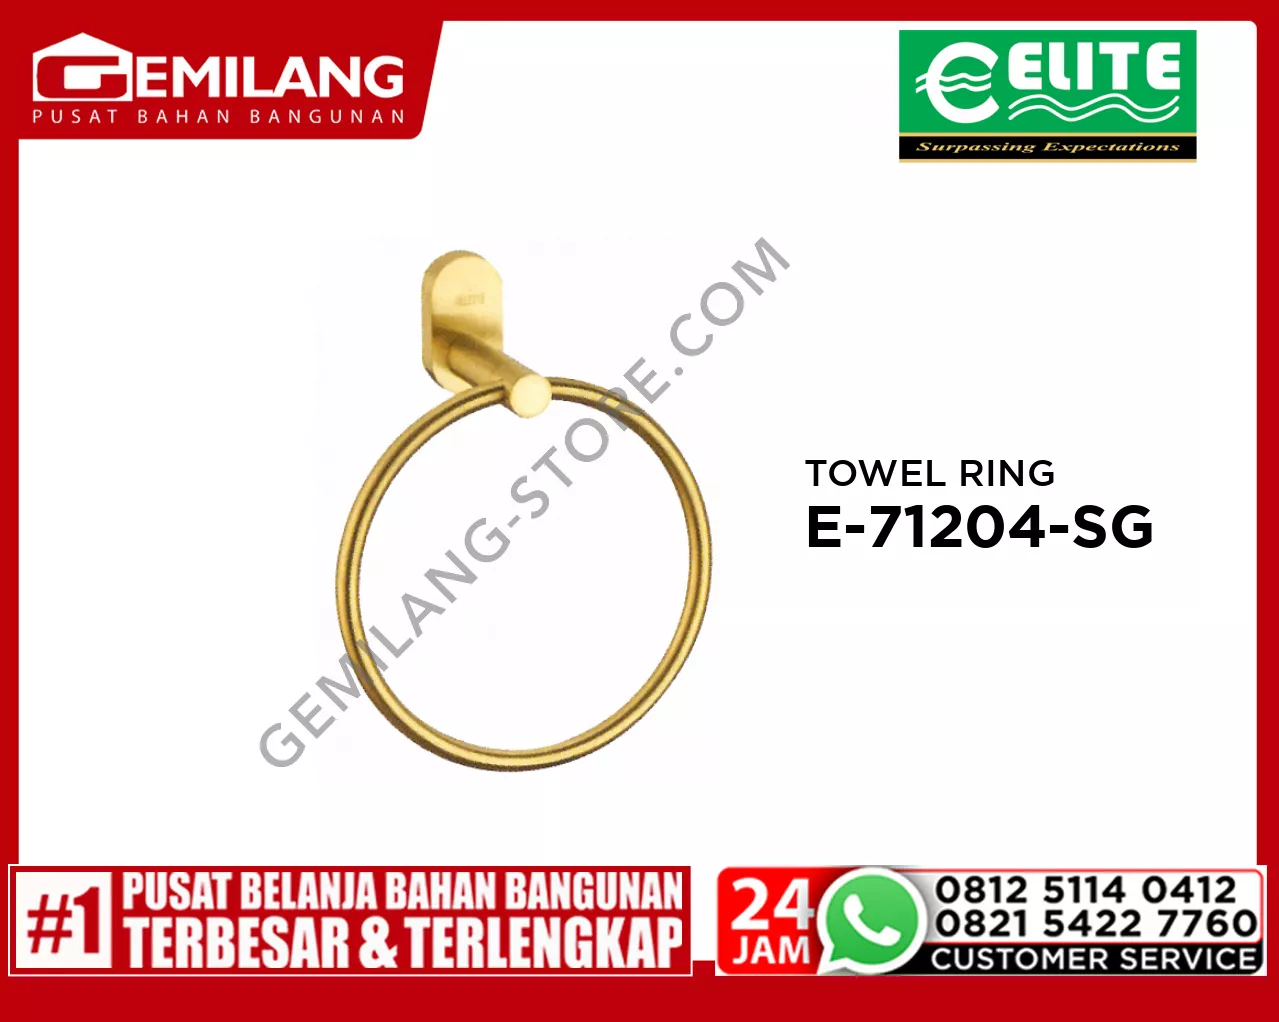 ELITE TOWEL RING STAINLESS SATIN GOLD E - 71204 - SG